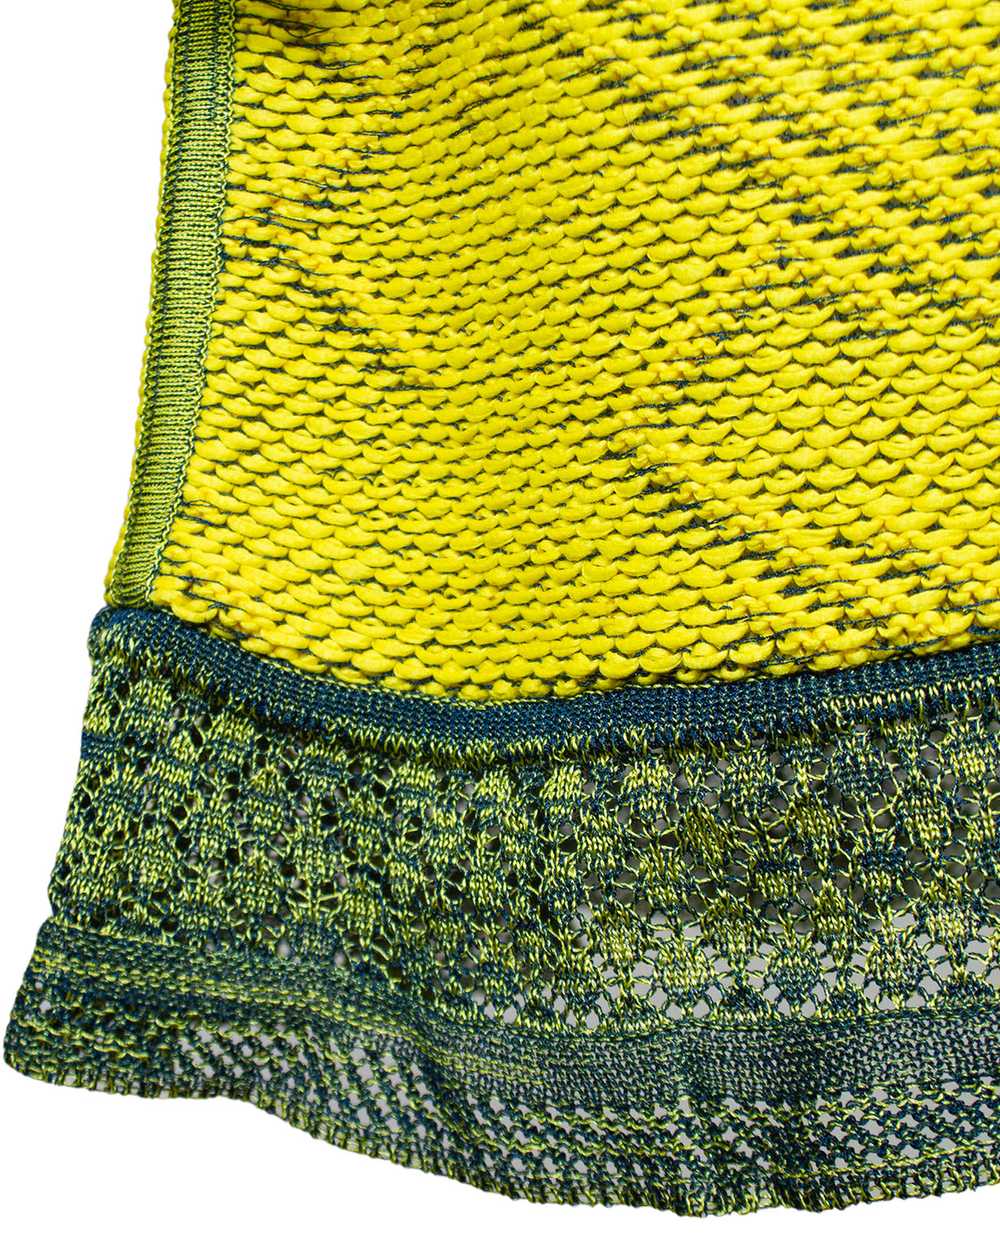 Christian Lacroix Chartreuse Knit Ensemble - image 5